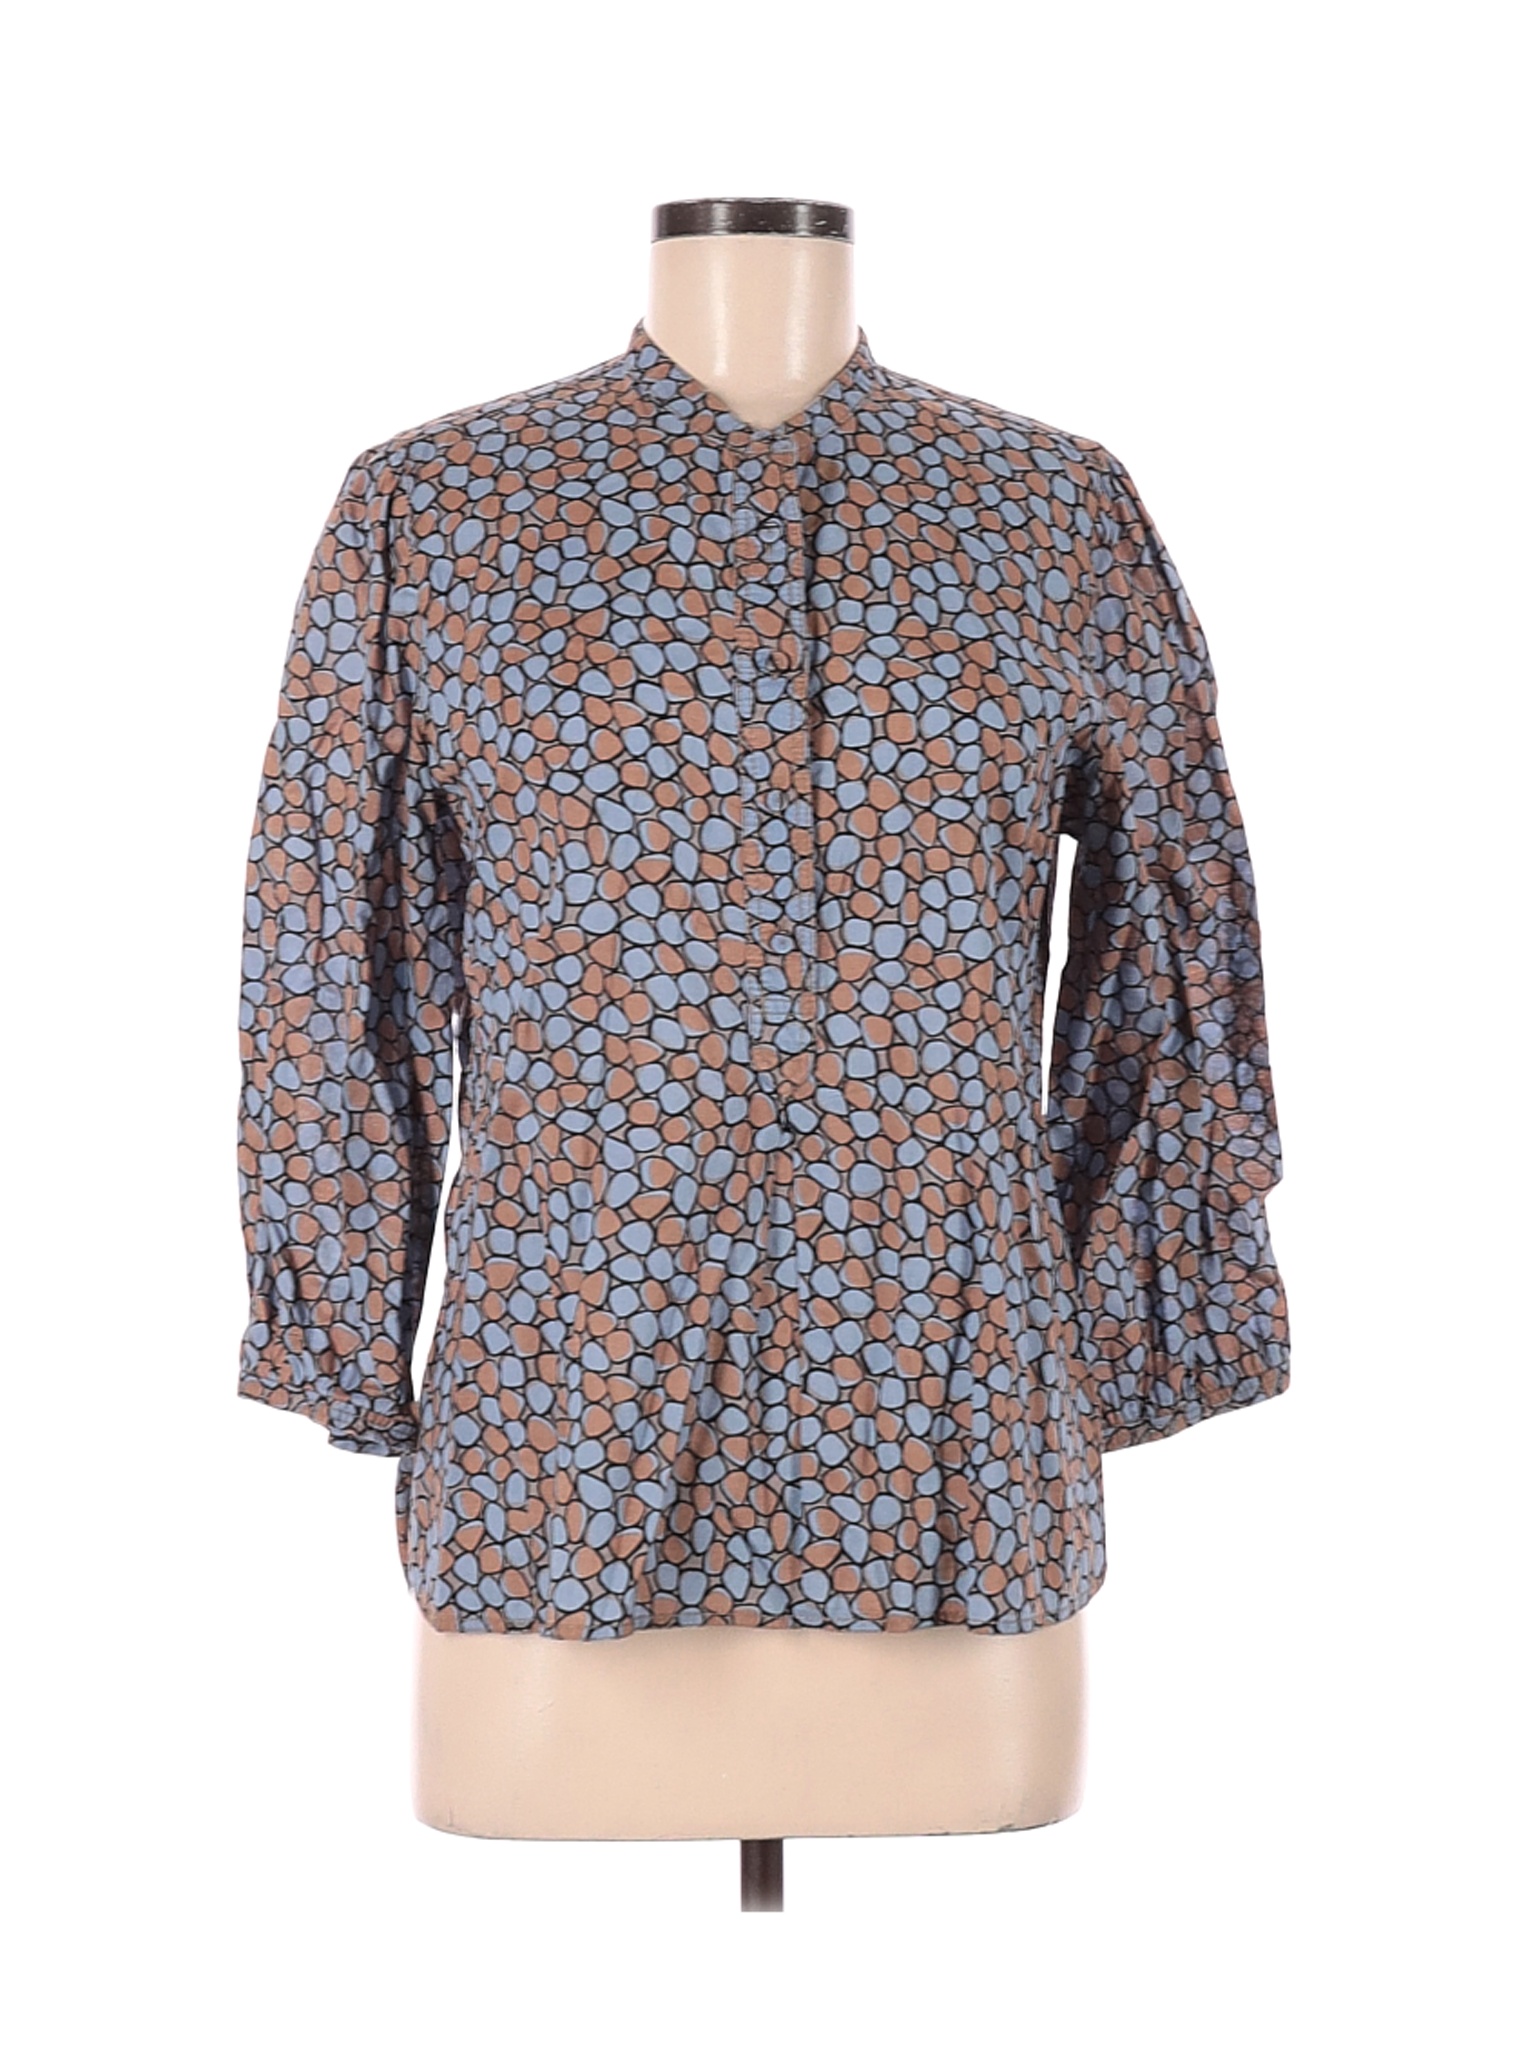 Liz Claiborne Women Blue 3/4 Sleeve Button-Down Shirt M | eBay